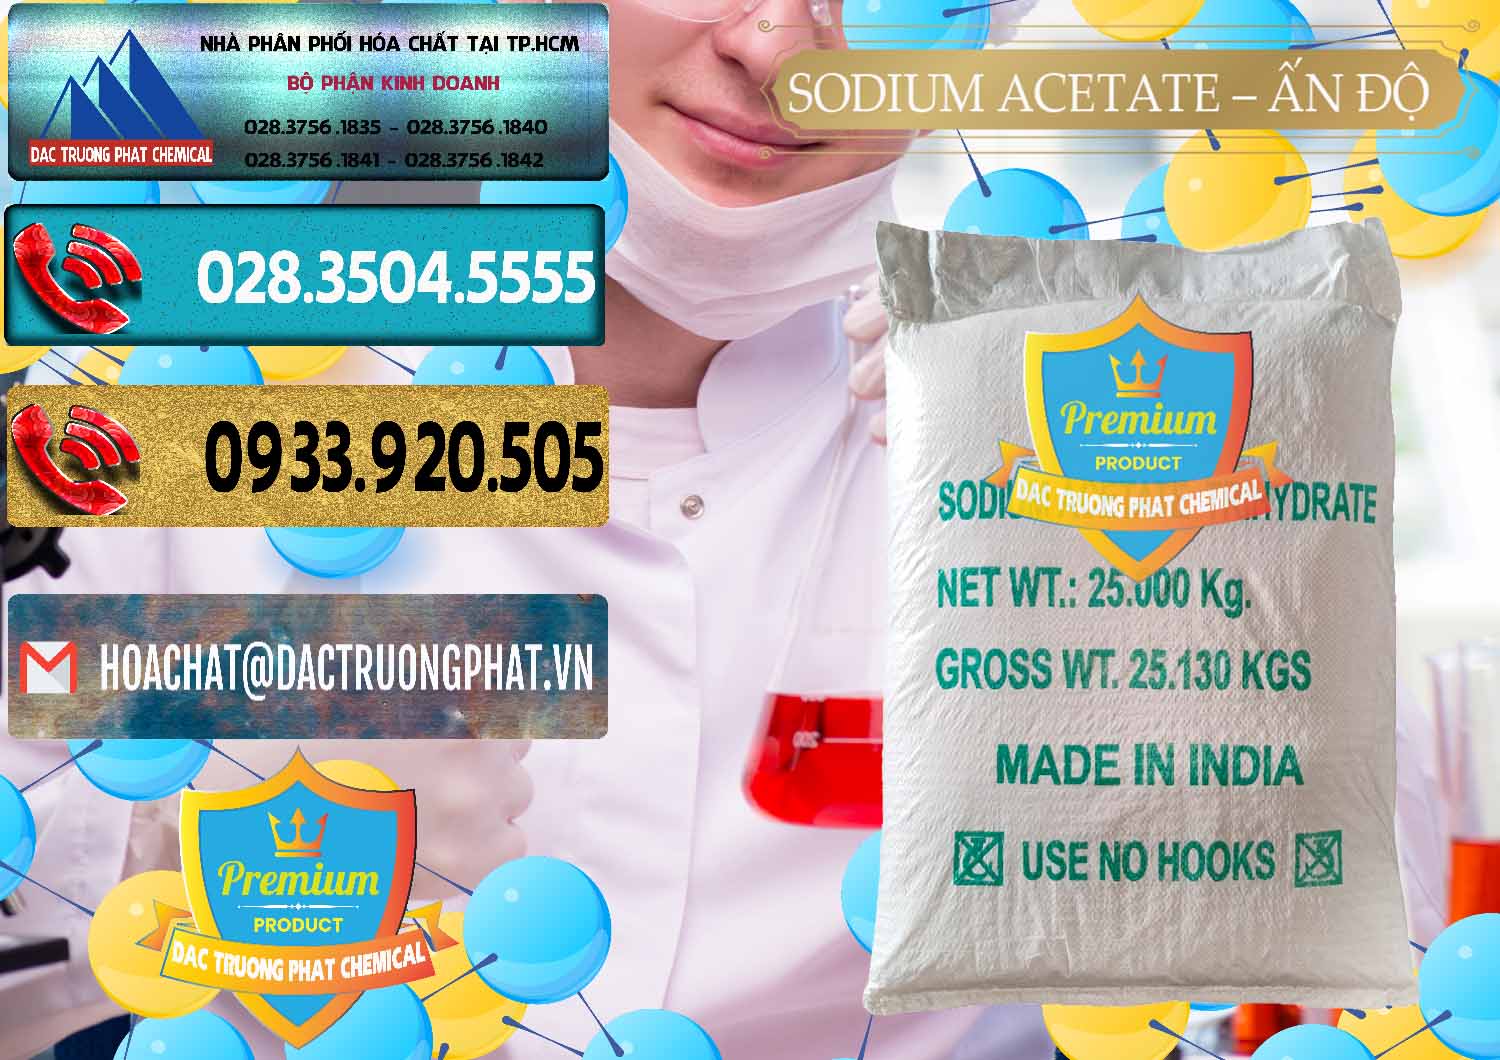 Chuyên bán _ cung cấp Sodium Acetate - Natri Acetate Ấn Độ India - 0133 - Cung cấp và phân phối hóa chất tại TP.HCM - hoachatdetnhuom.com